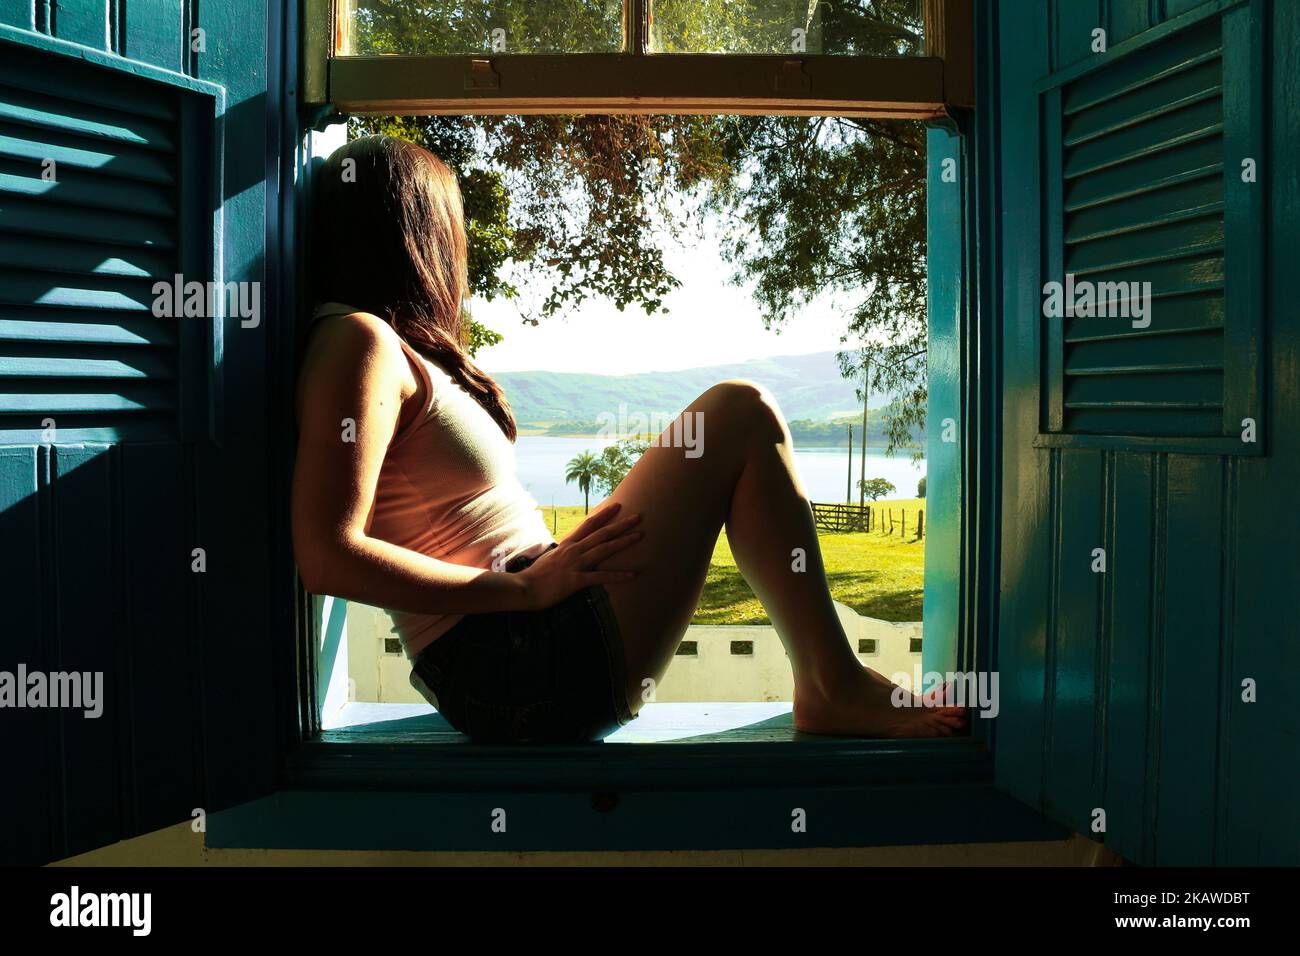 Mujer sentada en una ventana francesa mirando al exterior en un día soleado Foto de stock